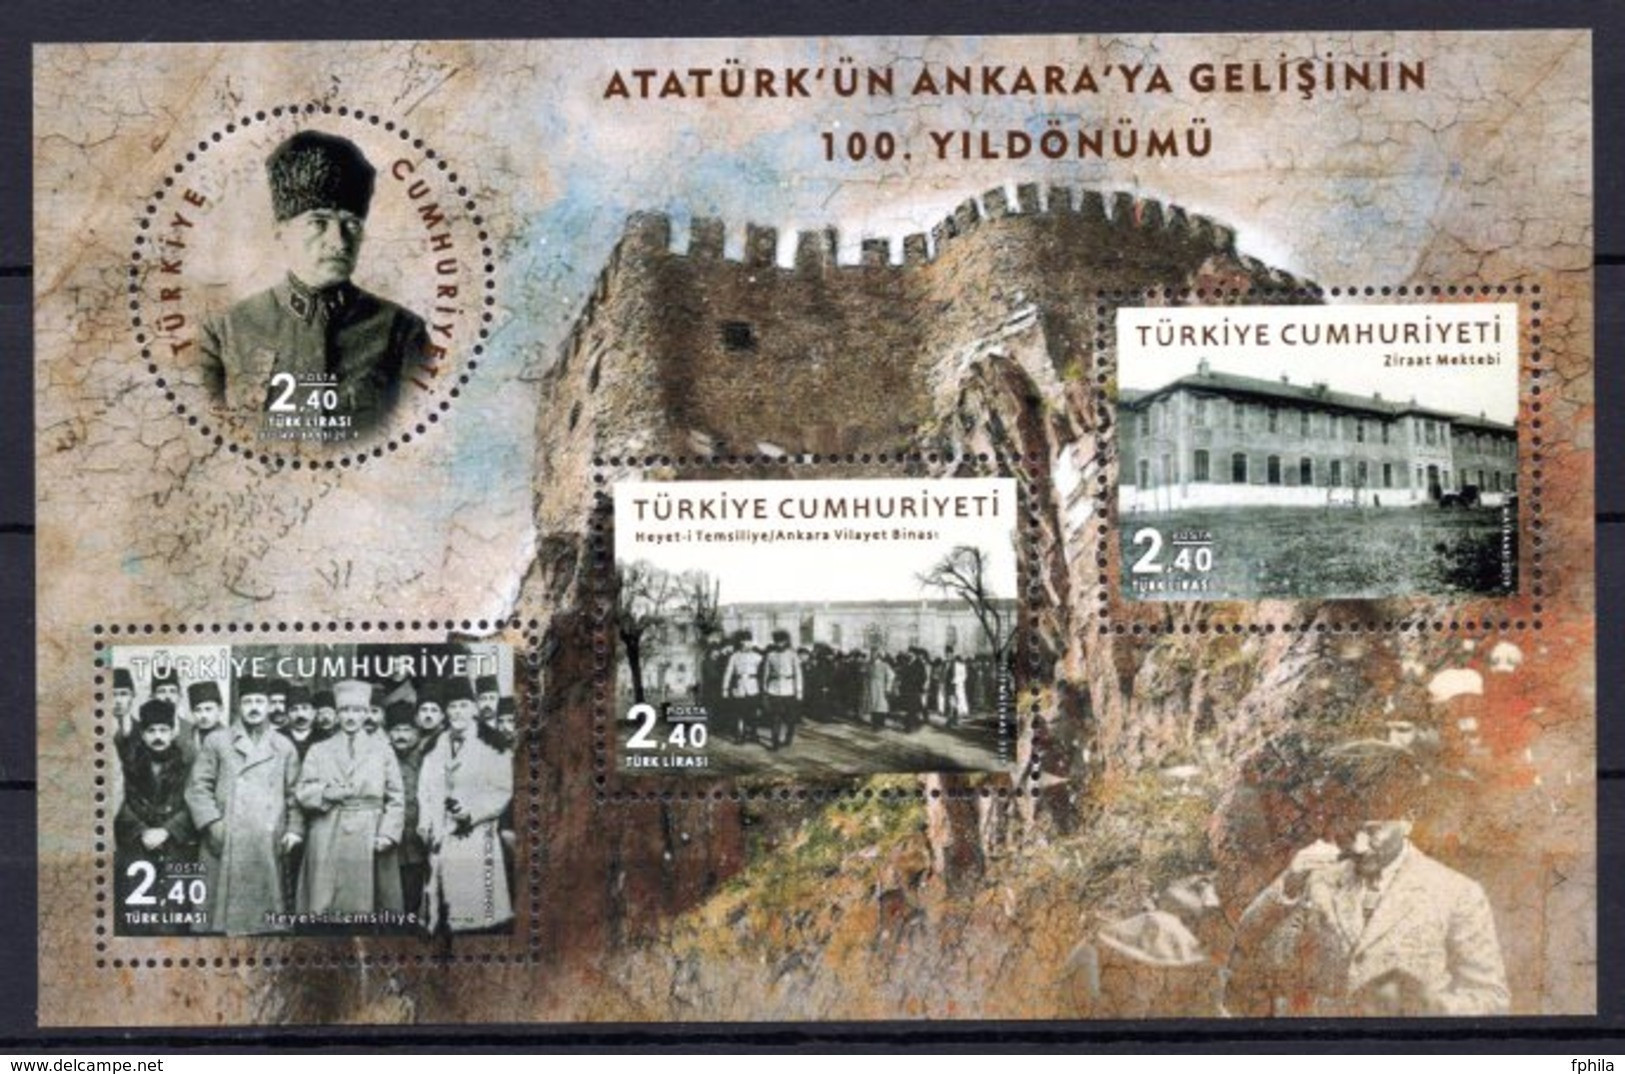 2019 TURKEY CENTENARY OF ATATURK'S ARRIVAL IN ANKARA SOUVENIR SHEET MNH ** - Blocs-feuillets